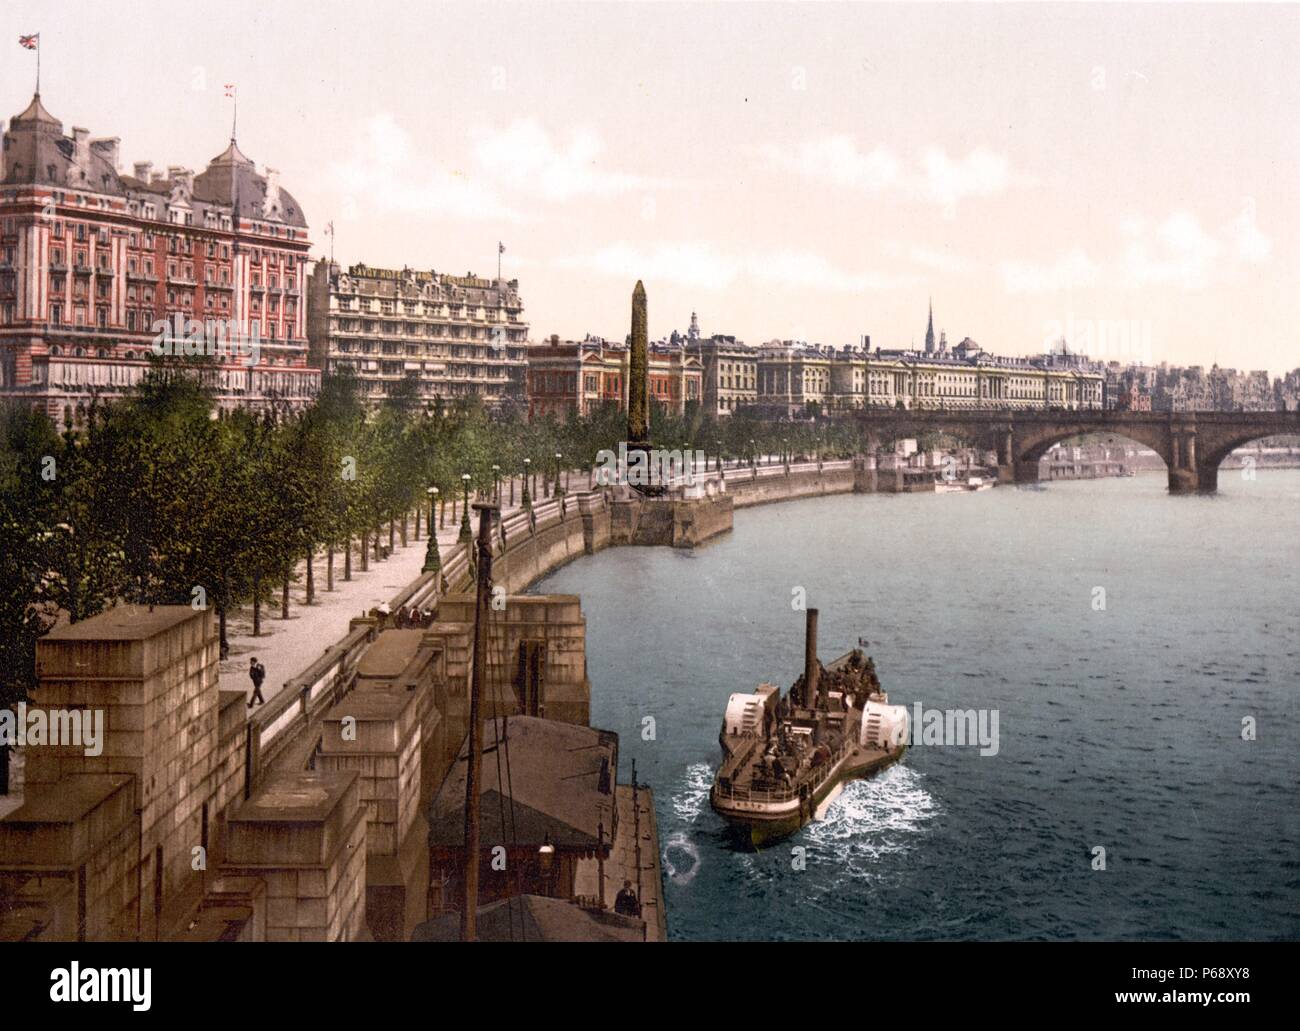 Photographie couleur d'un bateau à aubes à vapeur le long de la berge nord de la Tamise à Londres montrant Waterloo Bridge. Datée 1900 Banque D'Images